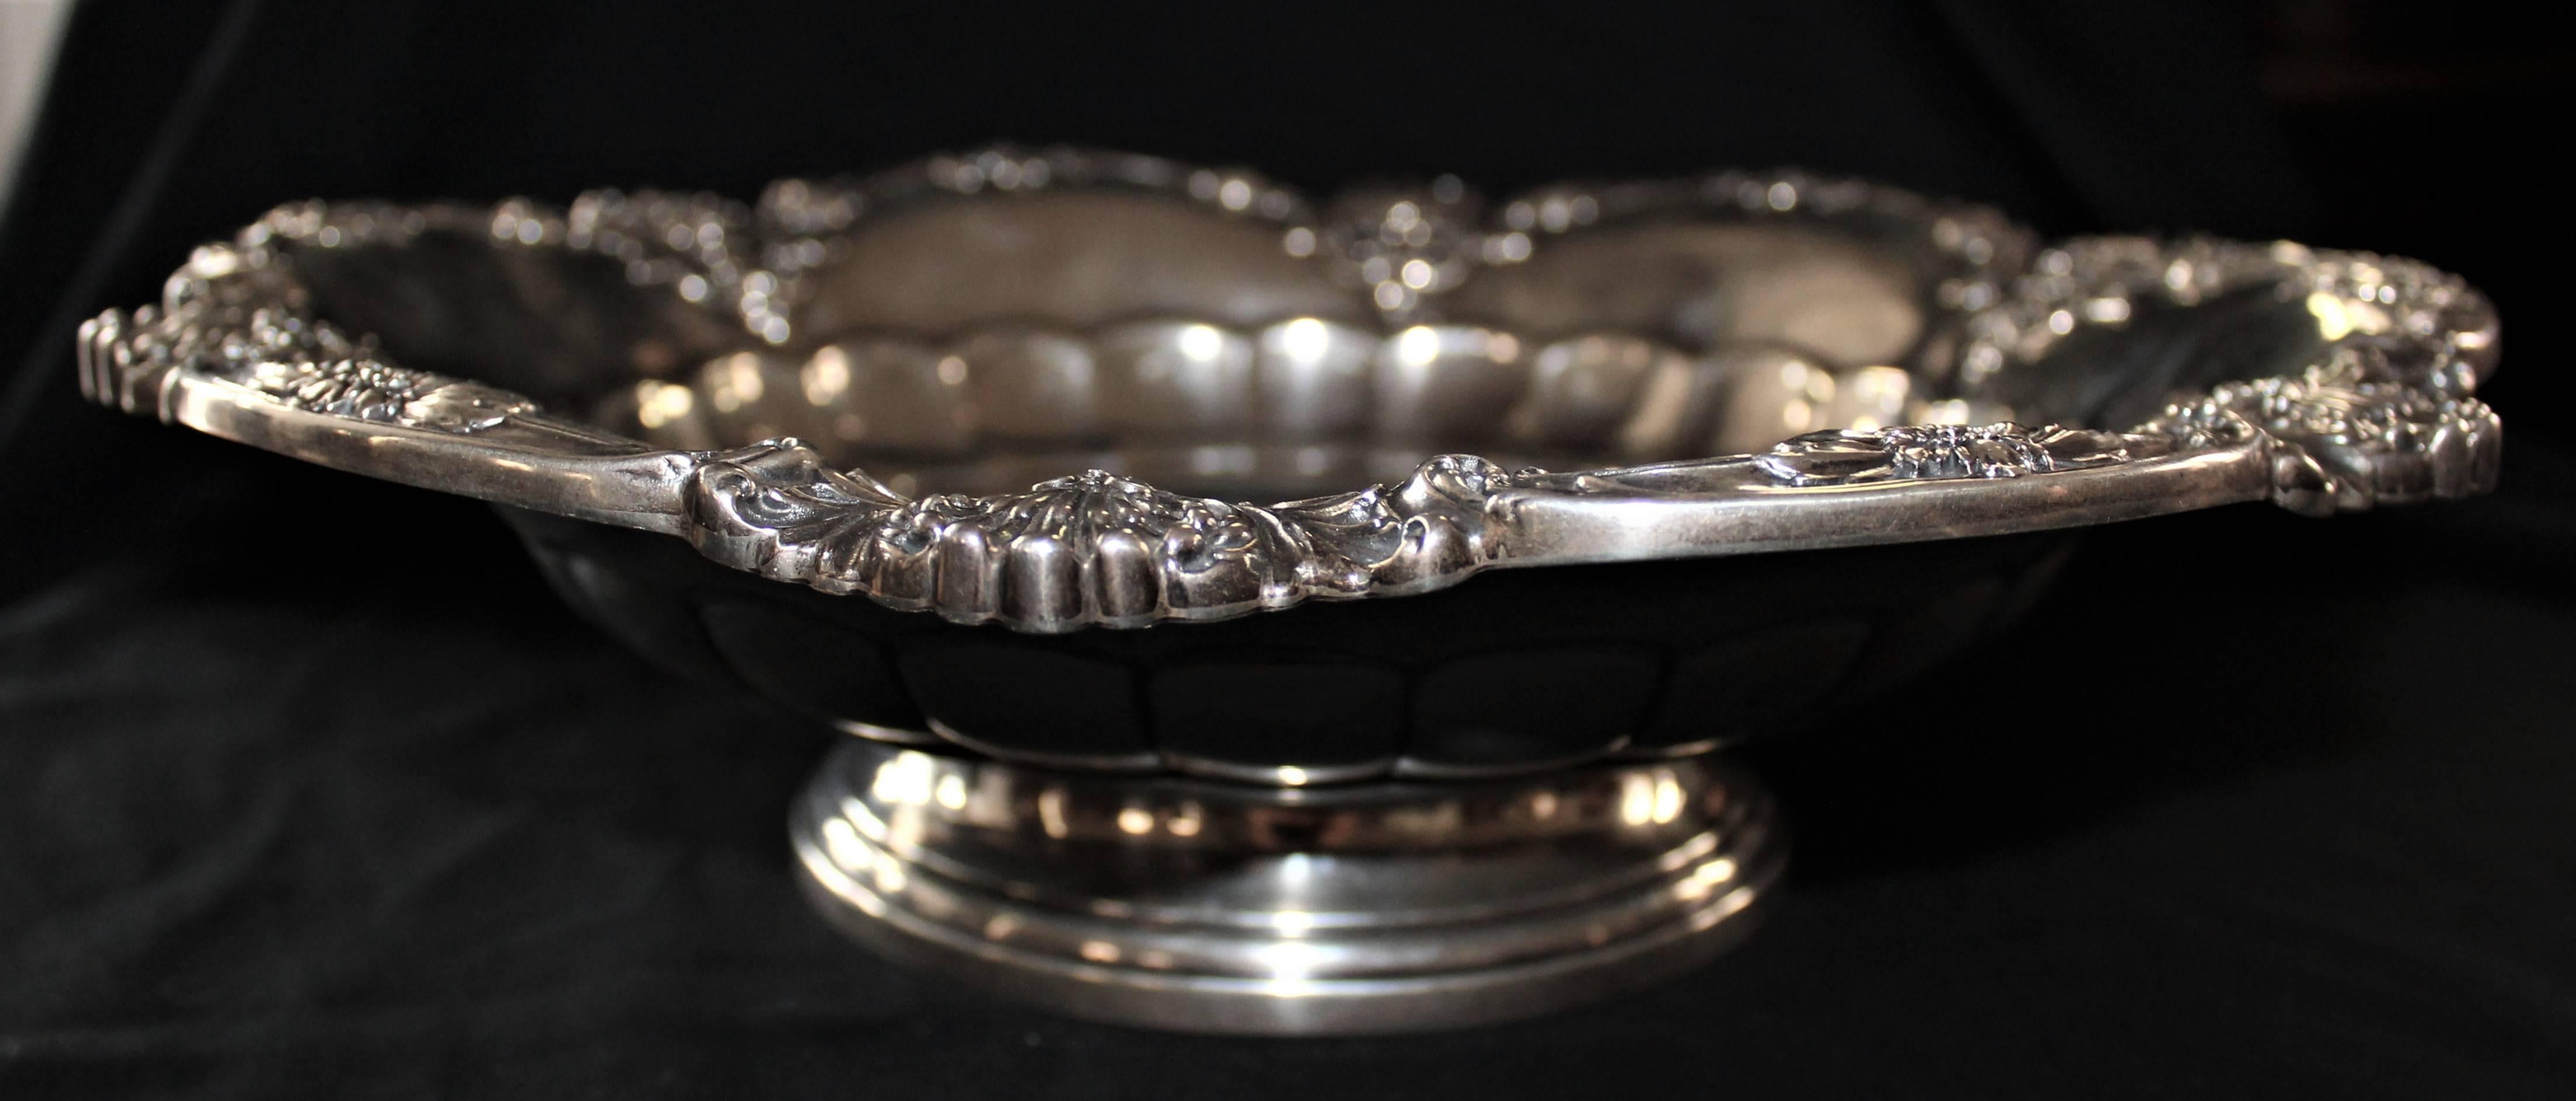 Große Gorham American silver shell chased bowl sterling. Wiegt 1050 Gramm.

Gorham Silver wurde 1831 in Providence, Rhode Island, von Jabez Gorham, einem Handwerksmeister, in Partnerschaft mit Henry L. Webster gegründet. Das Hauptprodukt der Firma